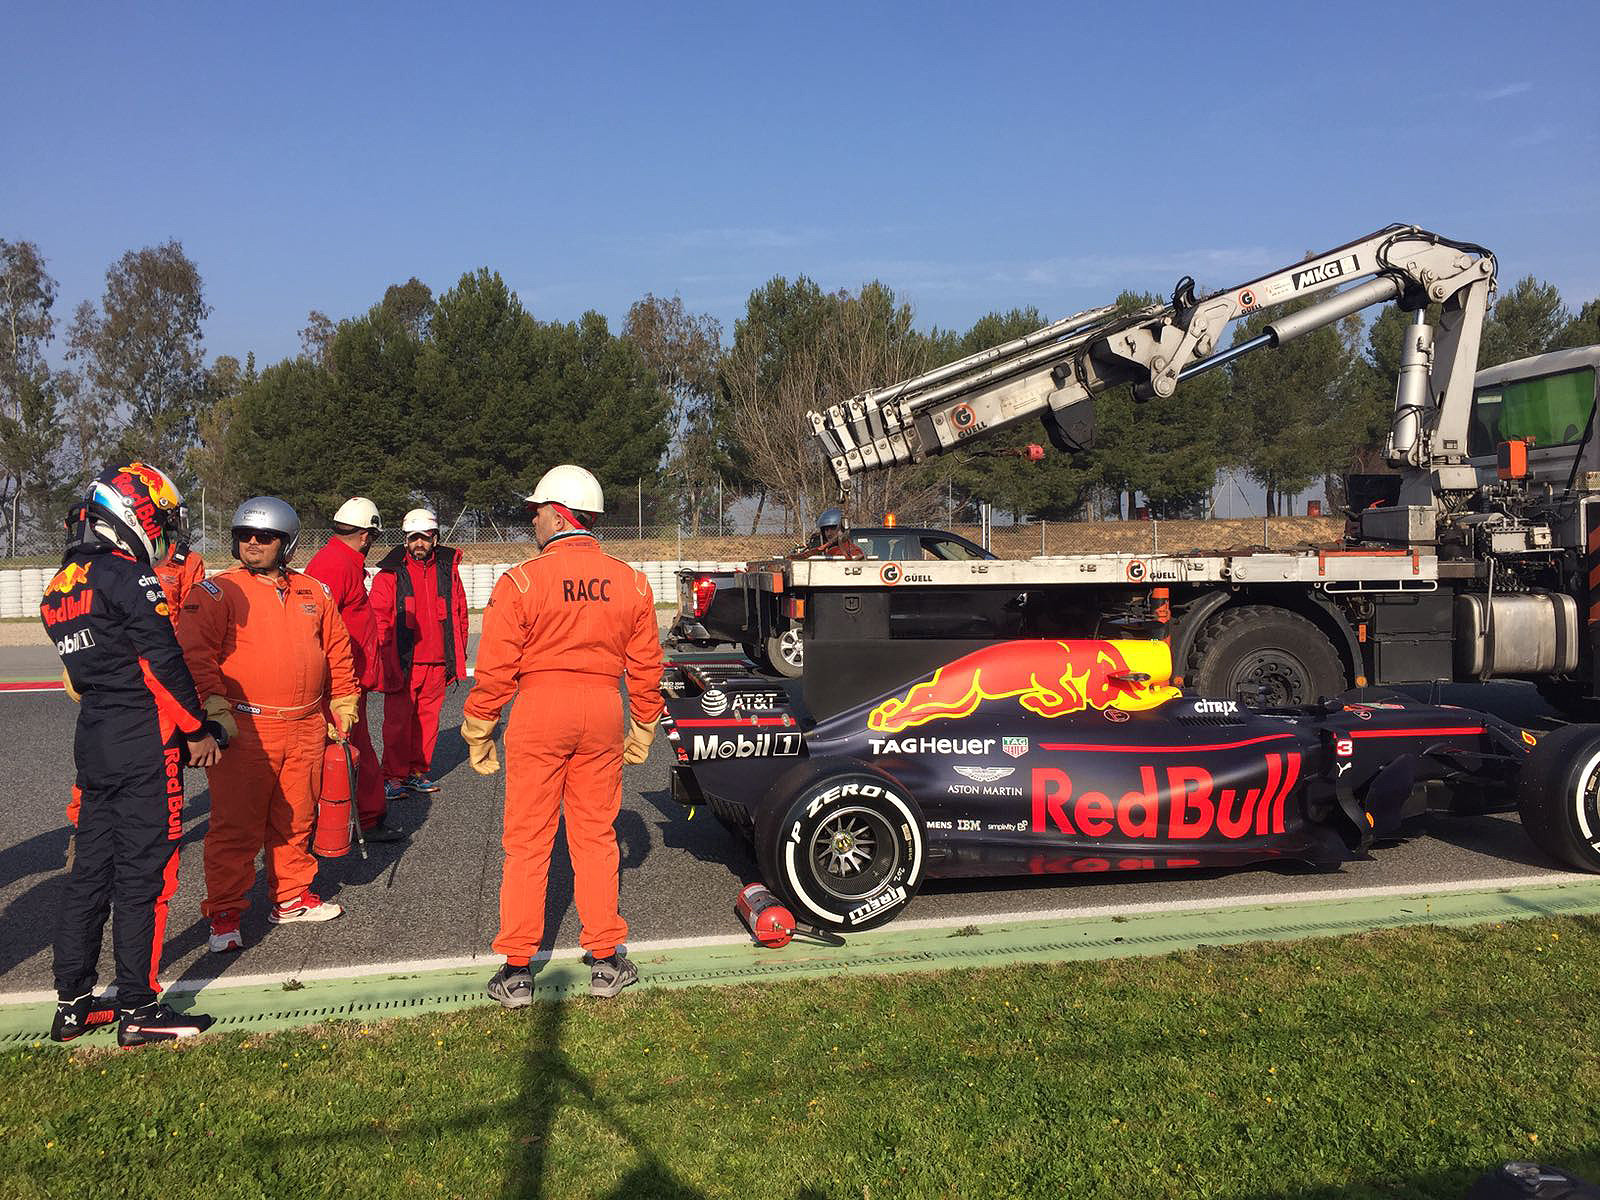 První nedobrovolná zastávka Daniela Ricciarda v předsezónních testech